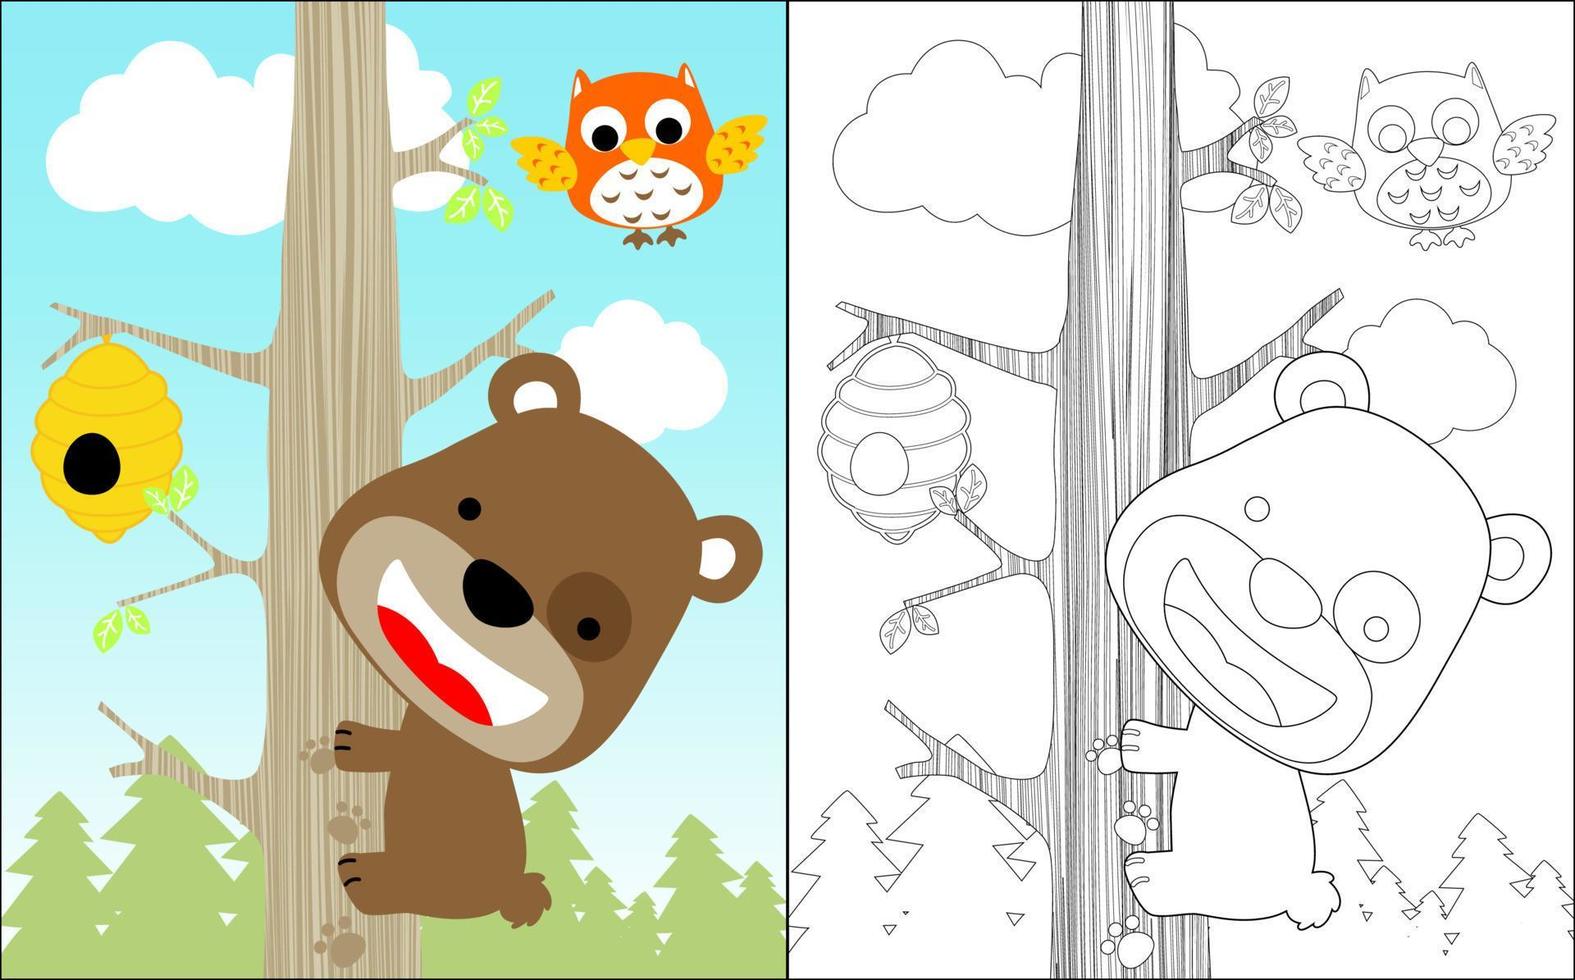 Malbuch des lustigen kleinen Bären Cartoon klettere auf einen Baum, um Honig im Wald zu nehmen, Eule fliegt oben vektor